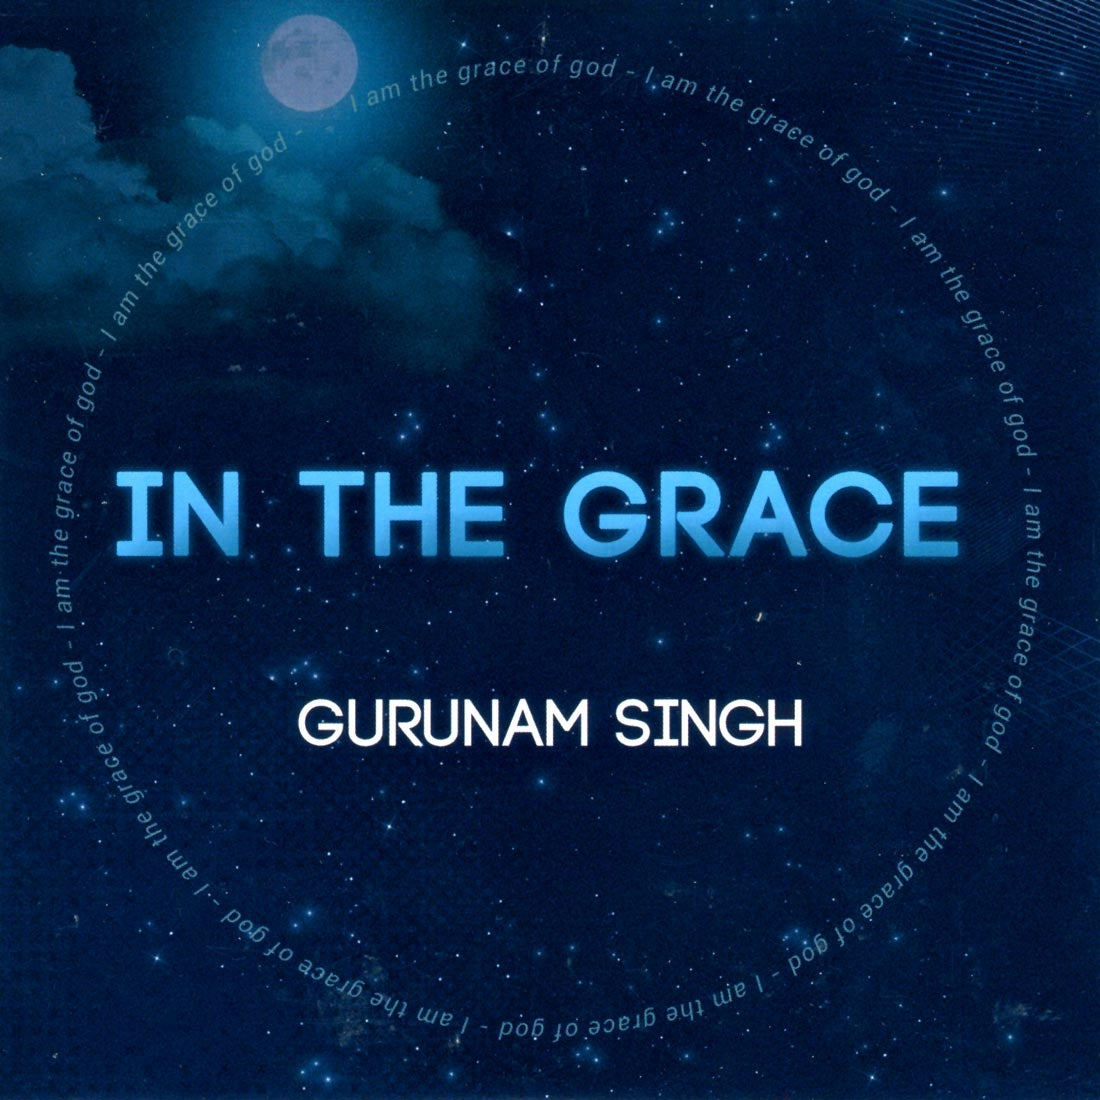 Dans la grâce - Gurunam Singh complet